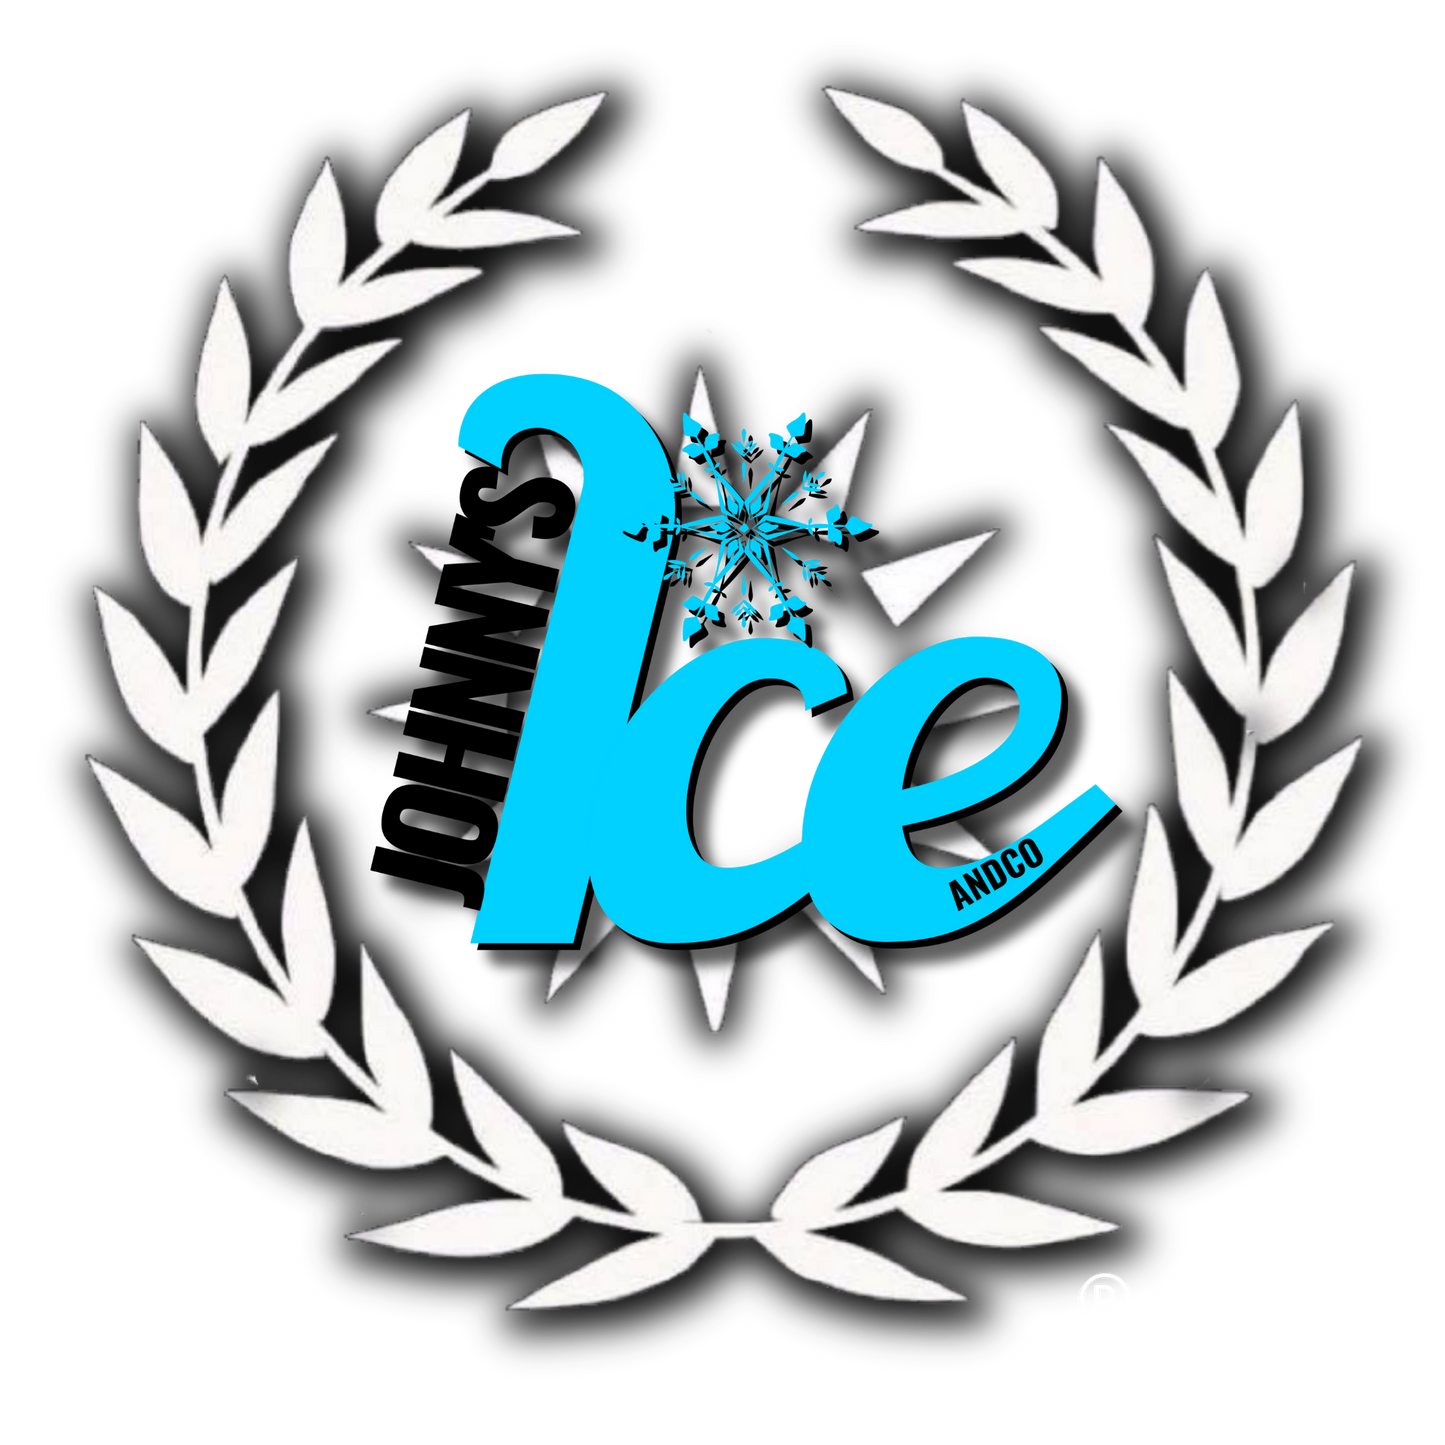 Johnny's Ice & Co